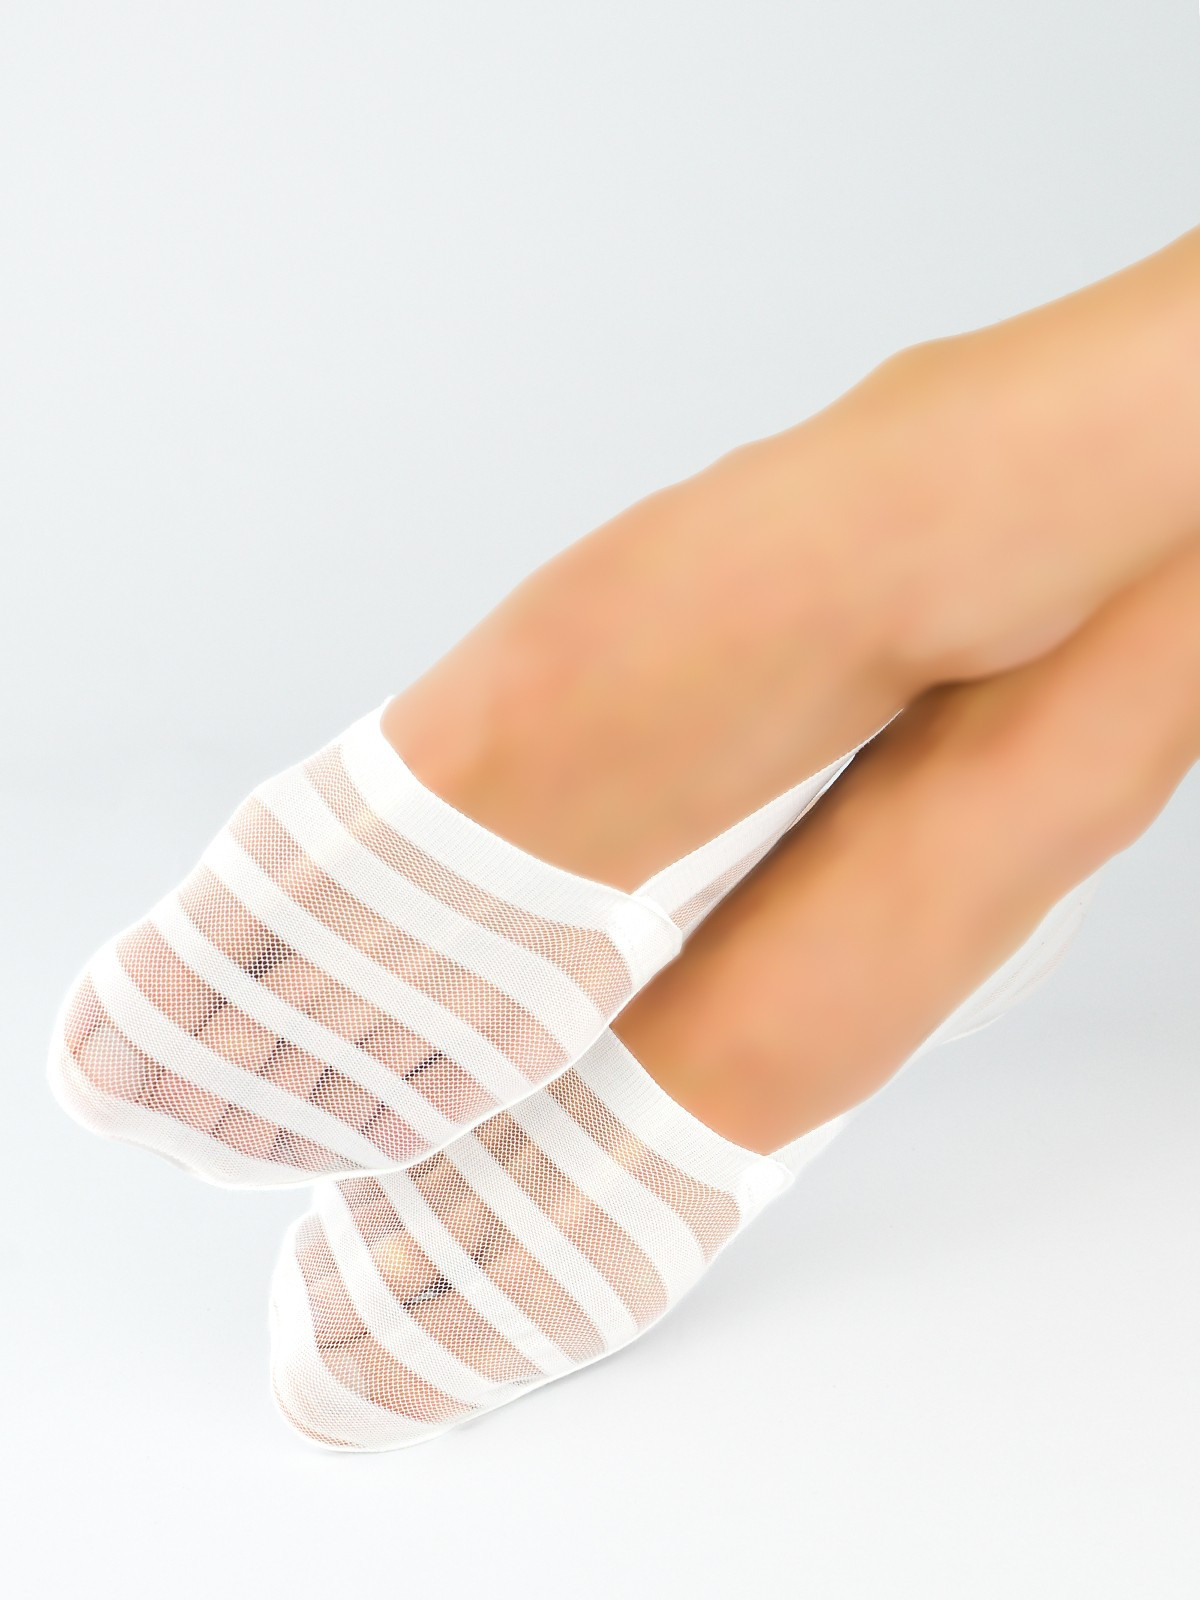 Dámské ponožky - baleríny Noviti SN029 Silikon, ABS černá 36-41